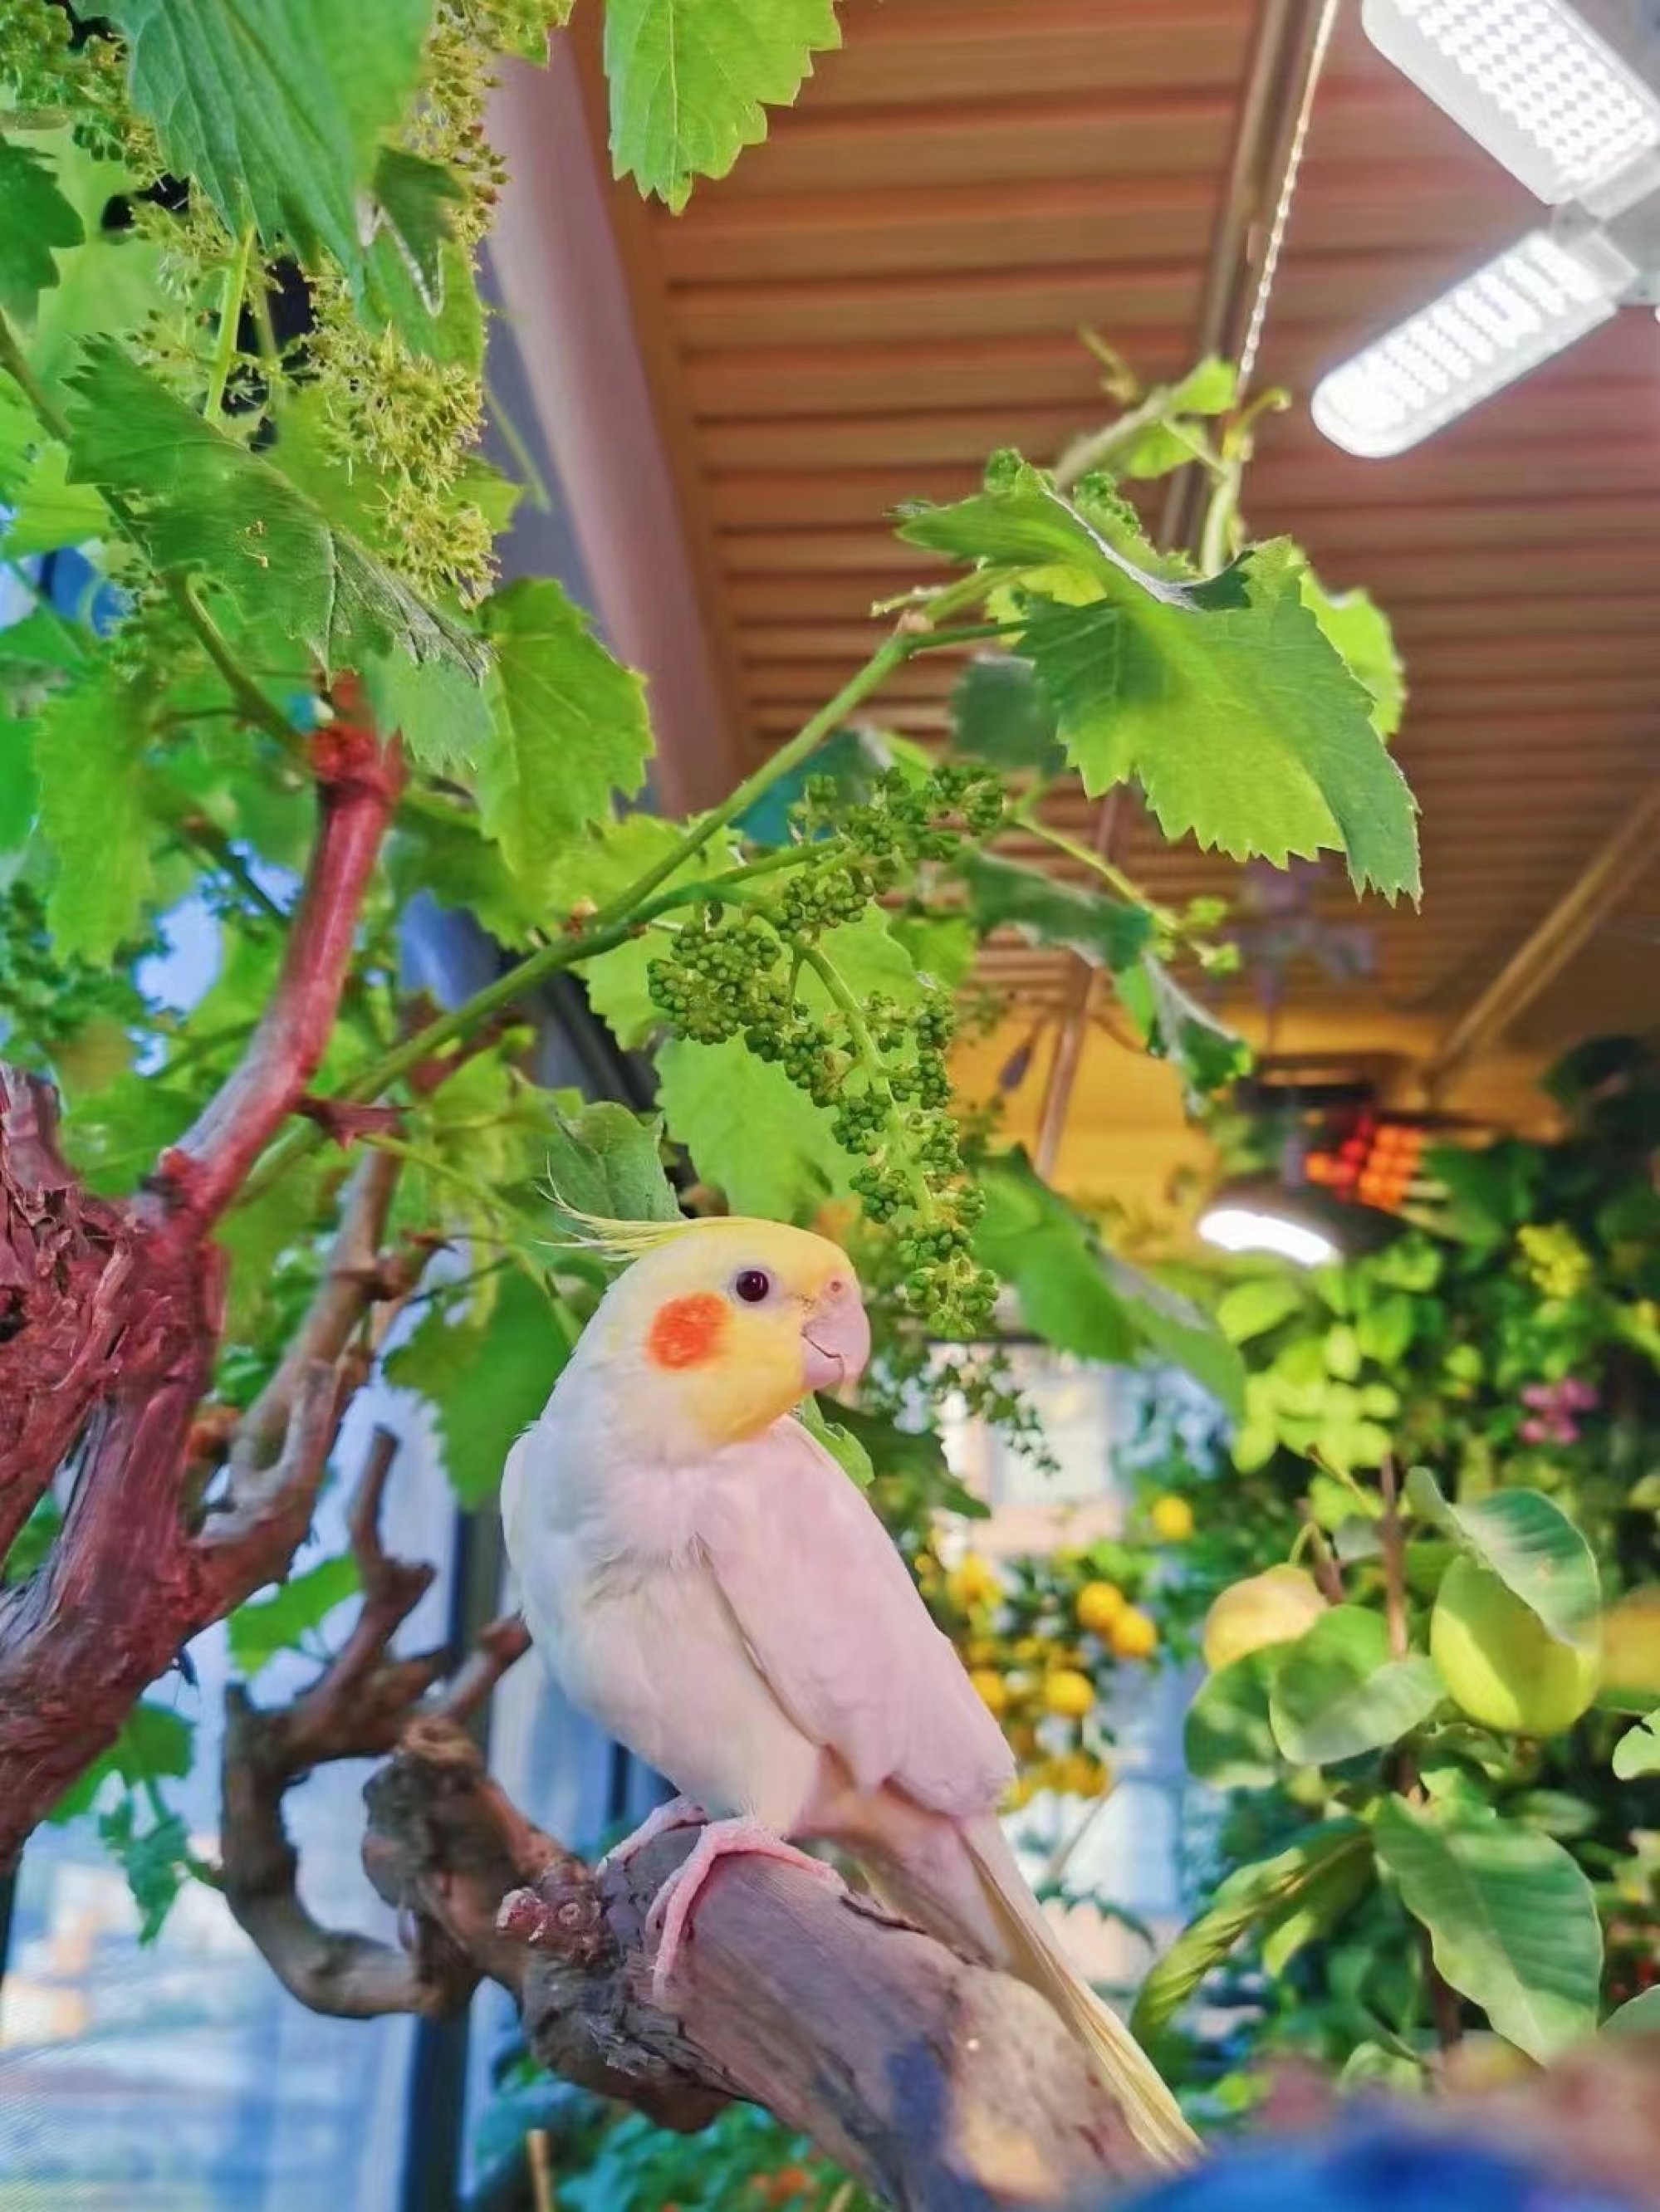 Zhong Liu’s balcony garden is even enjoyed by her feathery friend. Photo: Zhong Liu